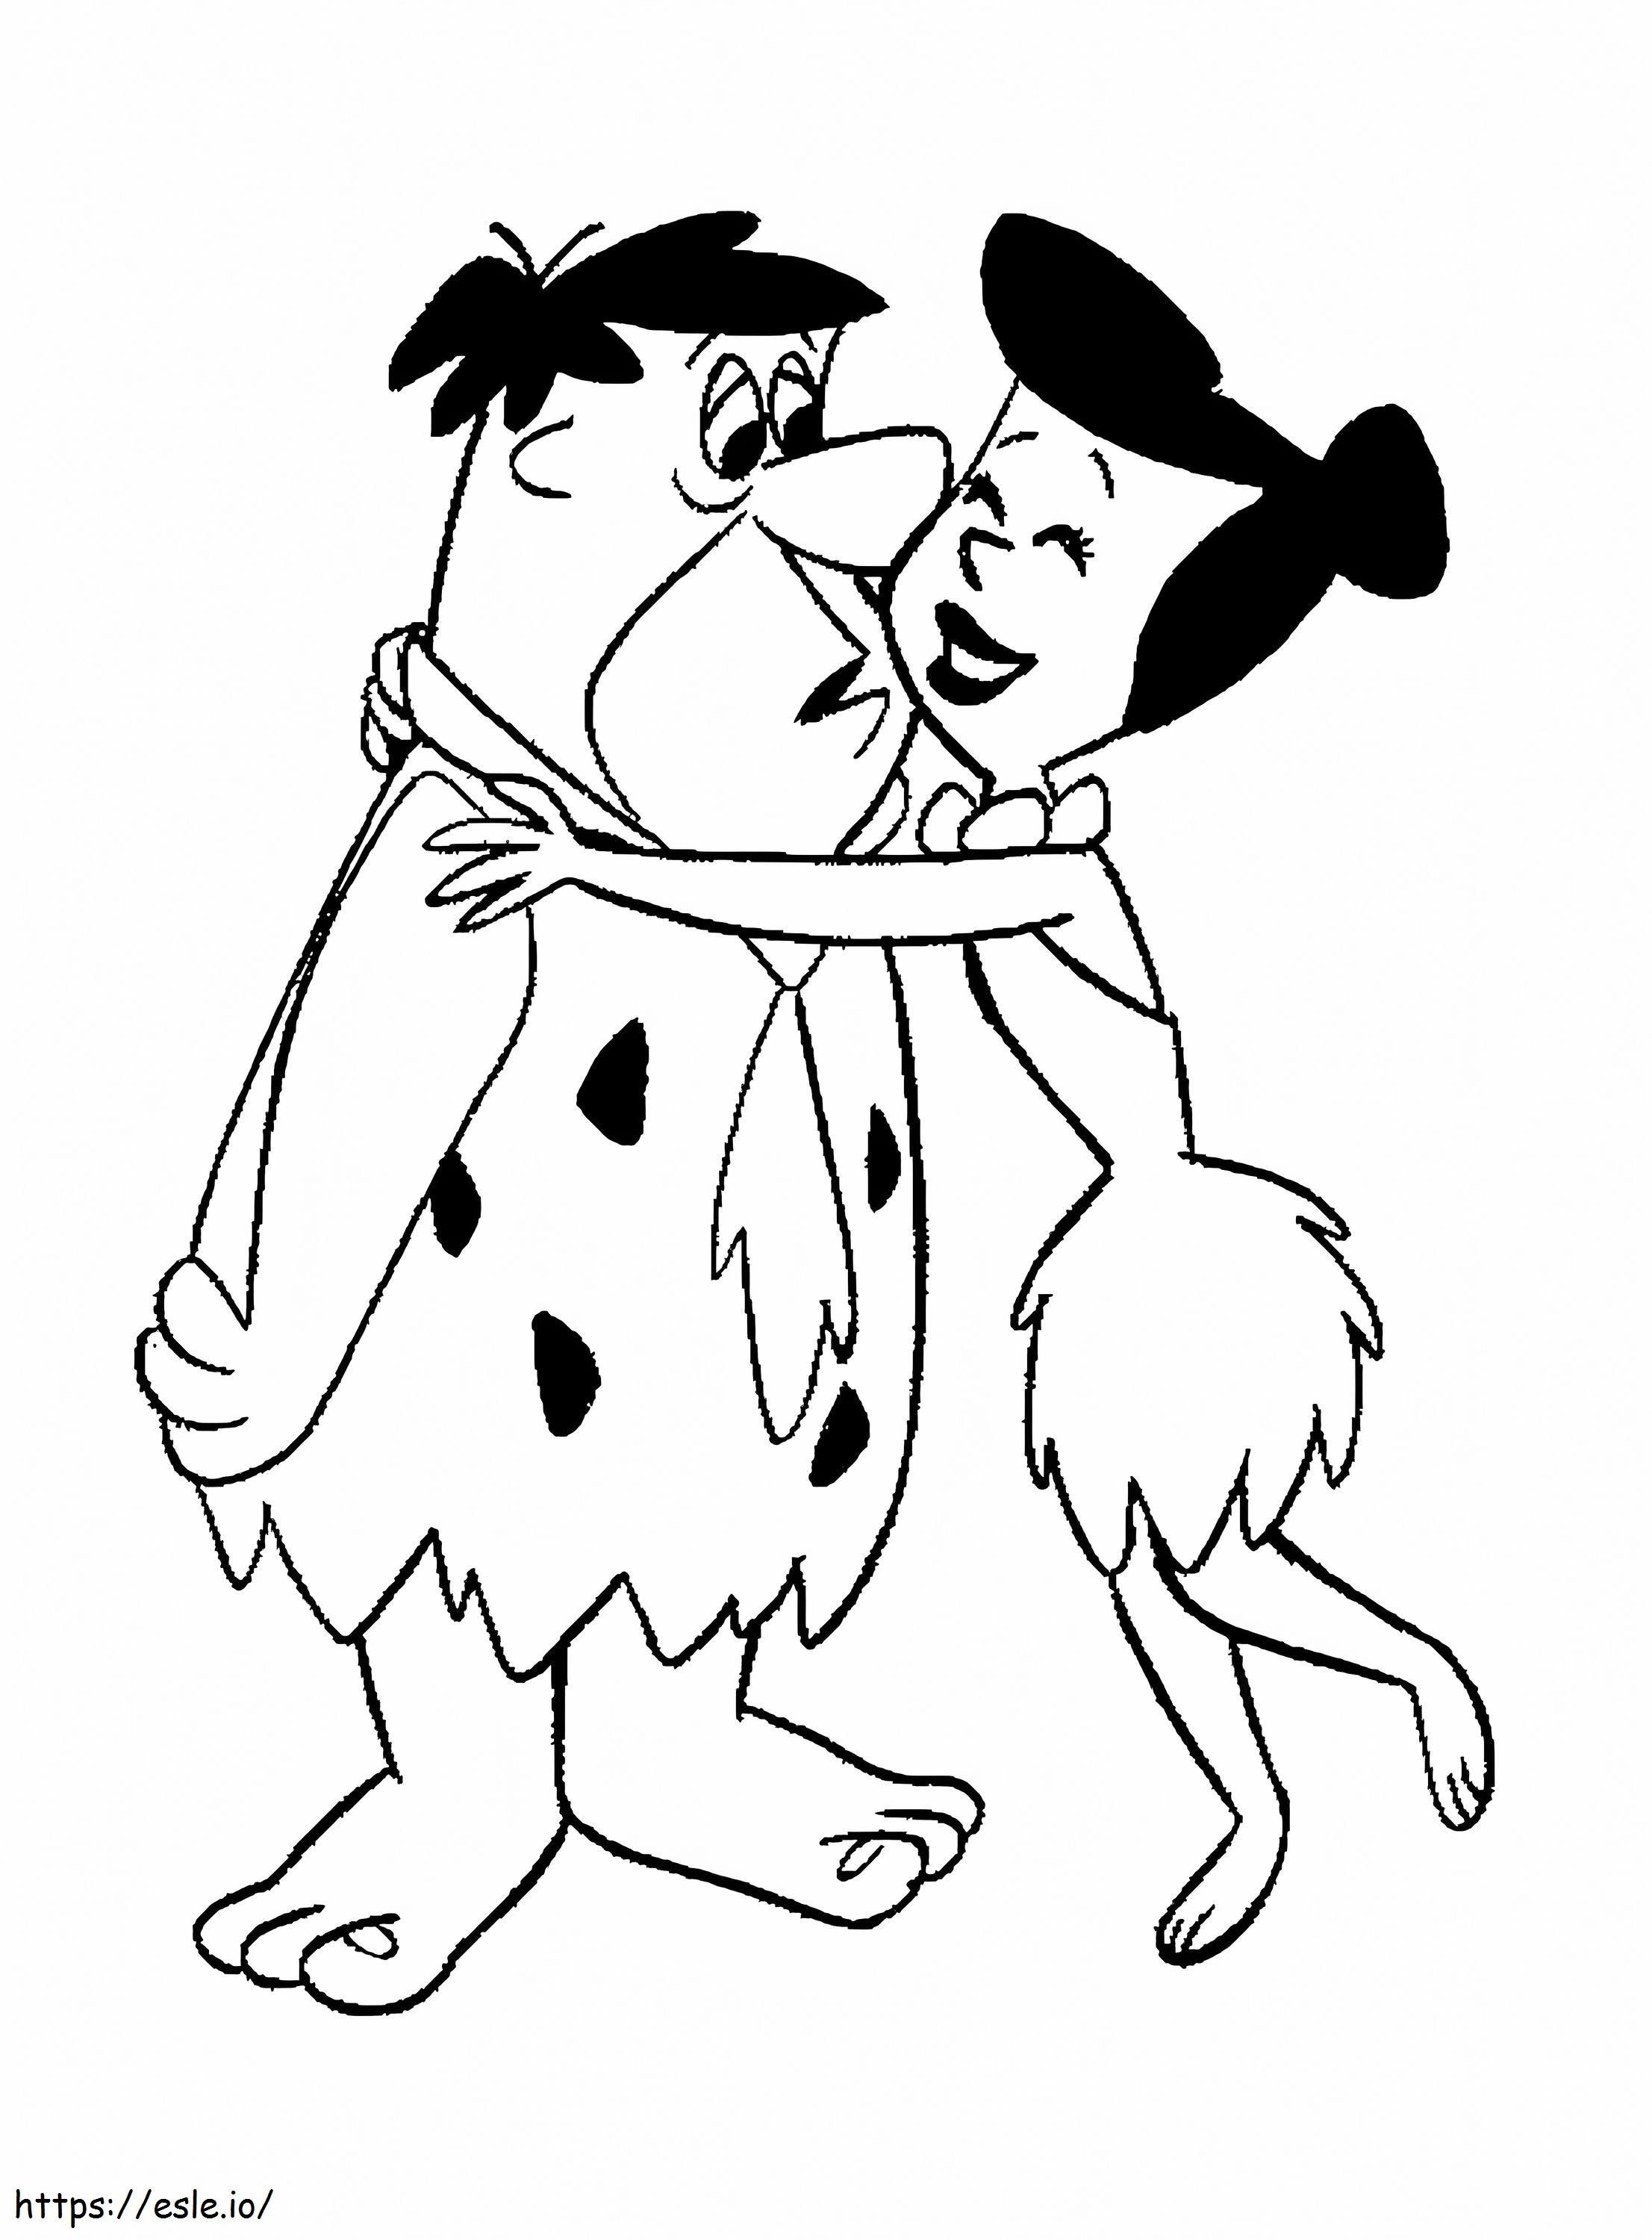 Fred ve Wilma boyama